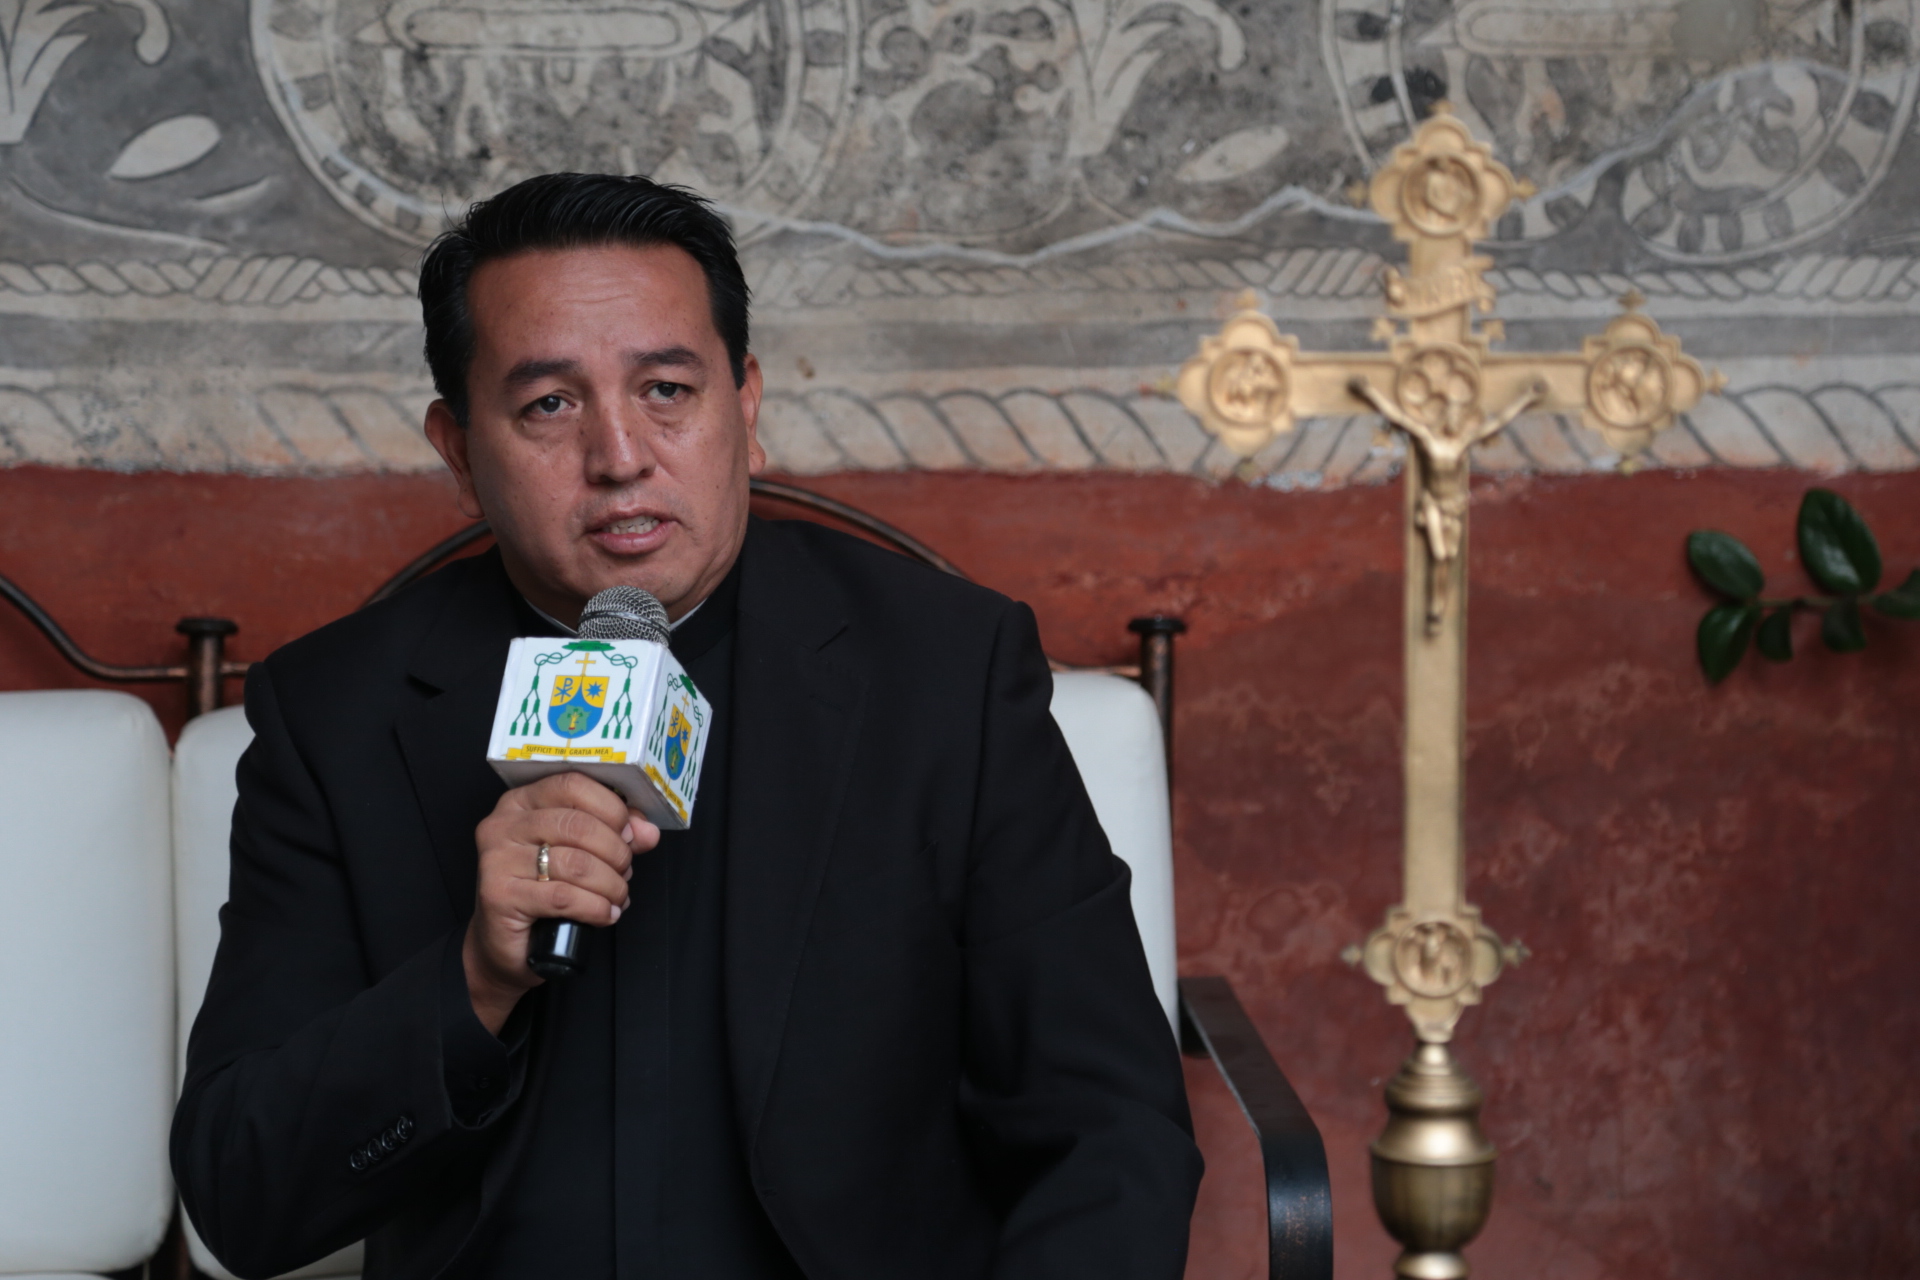 Diócesis de Cuernavaca se reunirá con gobernador electo para solicitar  gobernabilidad en Morelos – Zona Centro Noticias